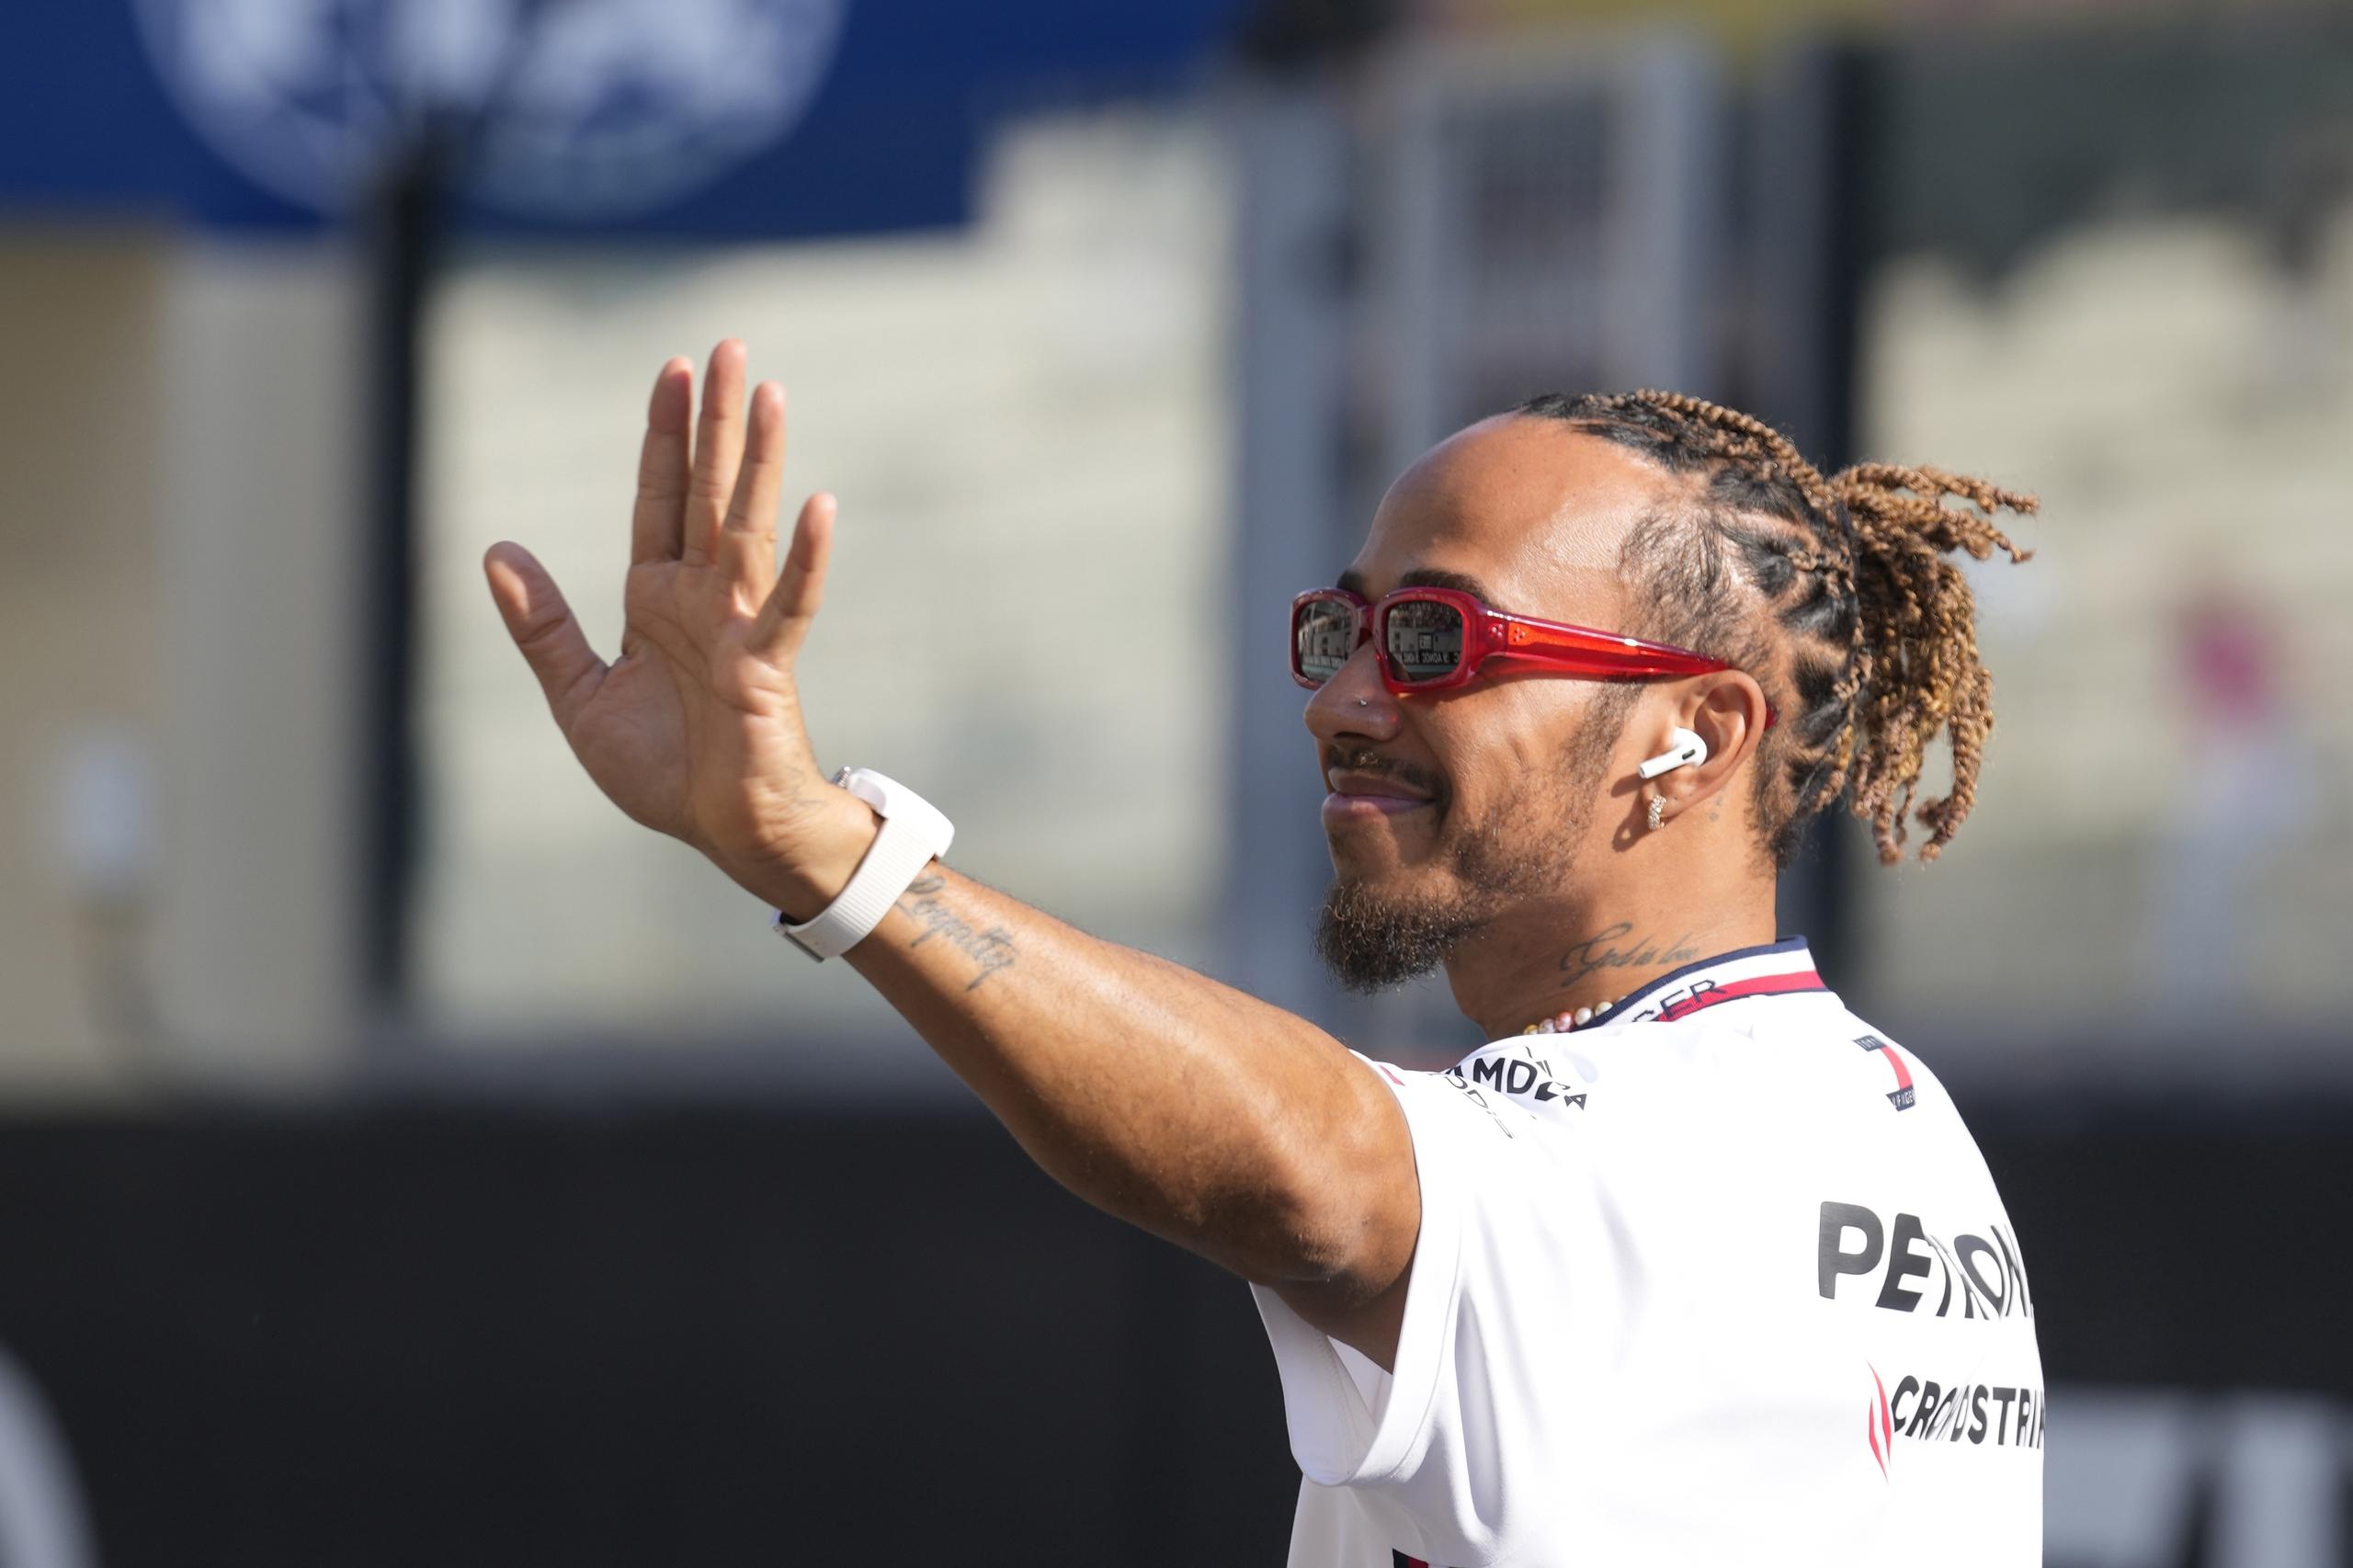 El piloto Lewis Hamilton saluda a la afición mientras los pilotos desfilan antes del Gran Premio de Abu Dhabi.